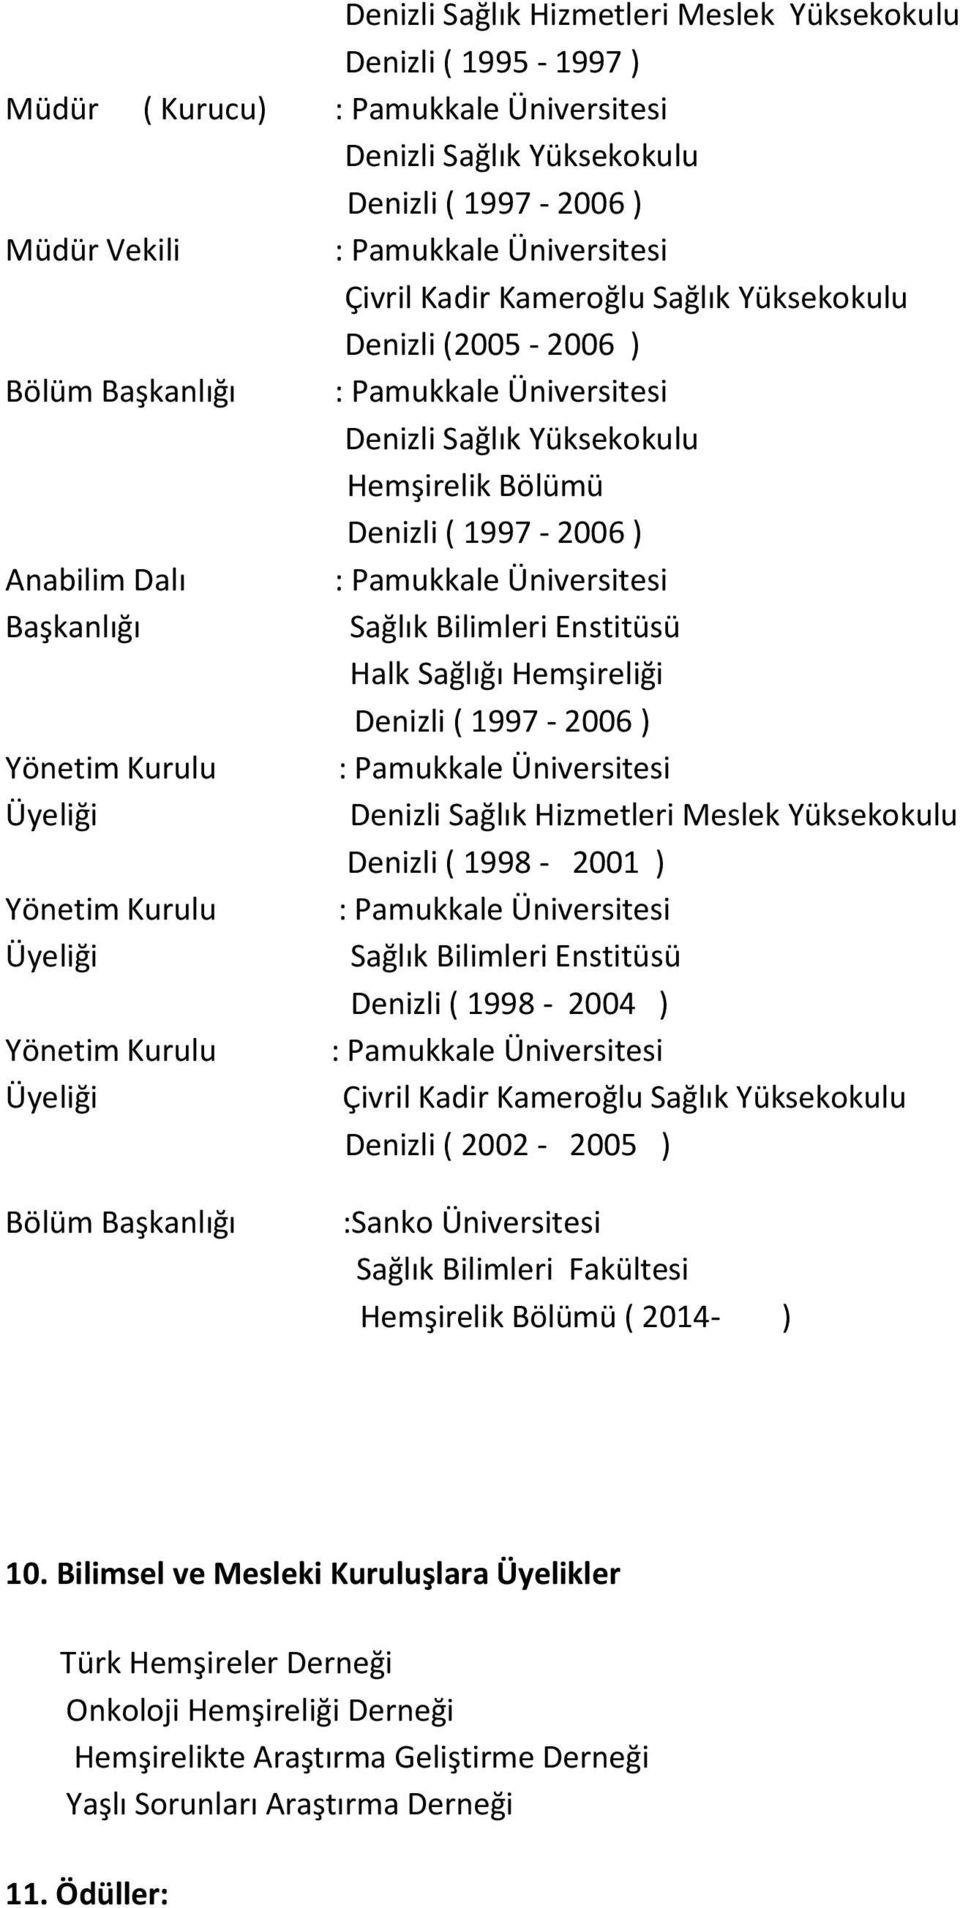 Enstitüsü Halk Sağlığı Hemşireliği Denizli Sağlık Hizmetleri Meslek Yüksekokulu Denizli ( 1998-2001 ) Sağlık Bilimleri Enstitüsü Denizli ( 1998-2004 ) Çivril Kadir Kameroğlu Sağlık Yüksekokulu